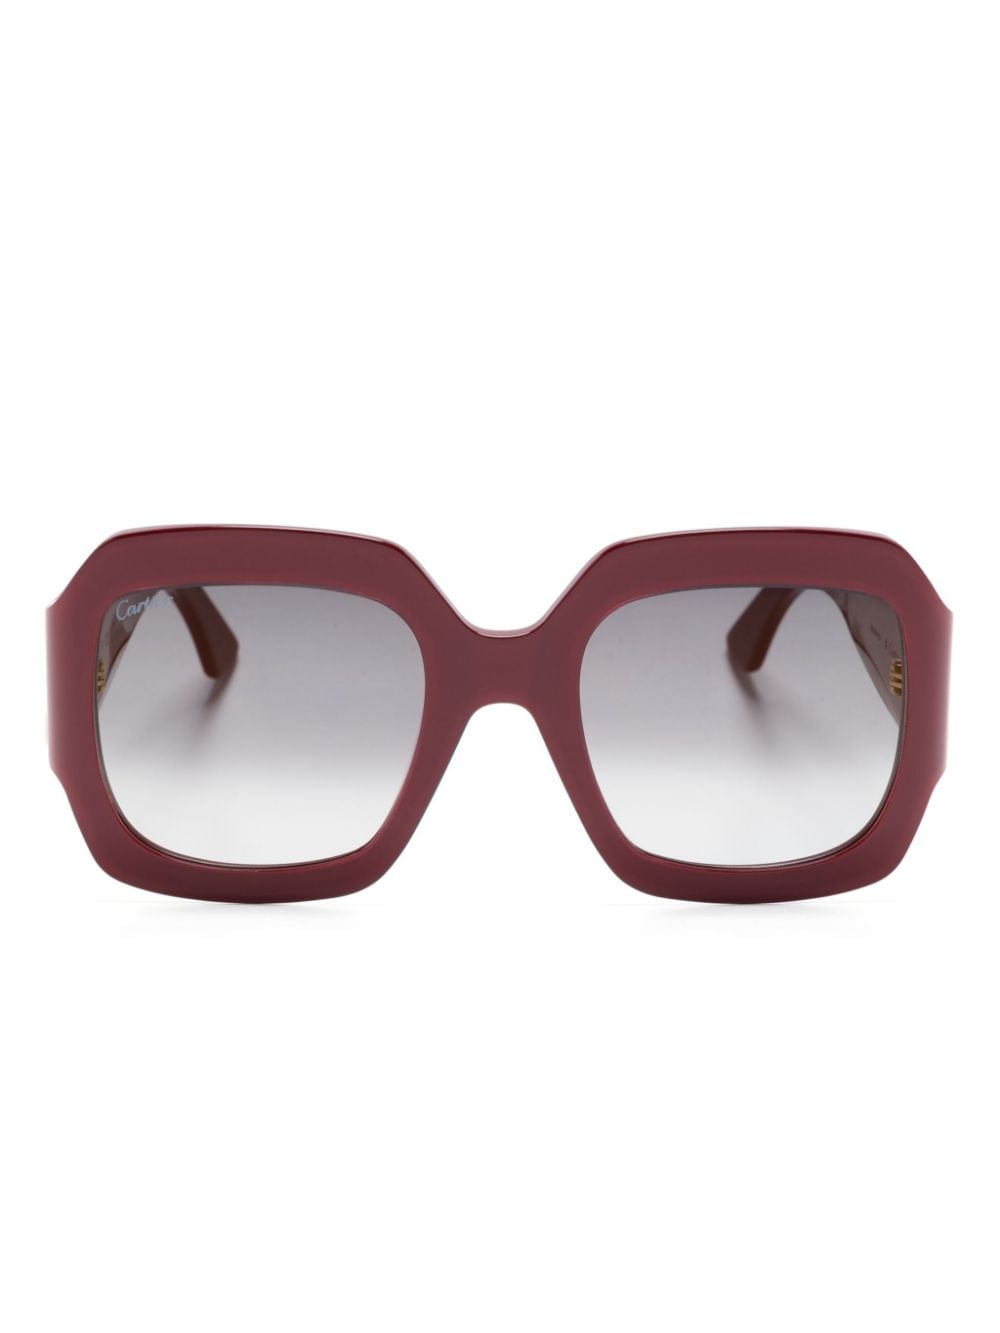 Cartier Eyewear Sonnenbrille mit geometrischem Gestell - Rot von Cartier Eyewear